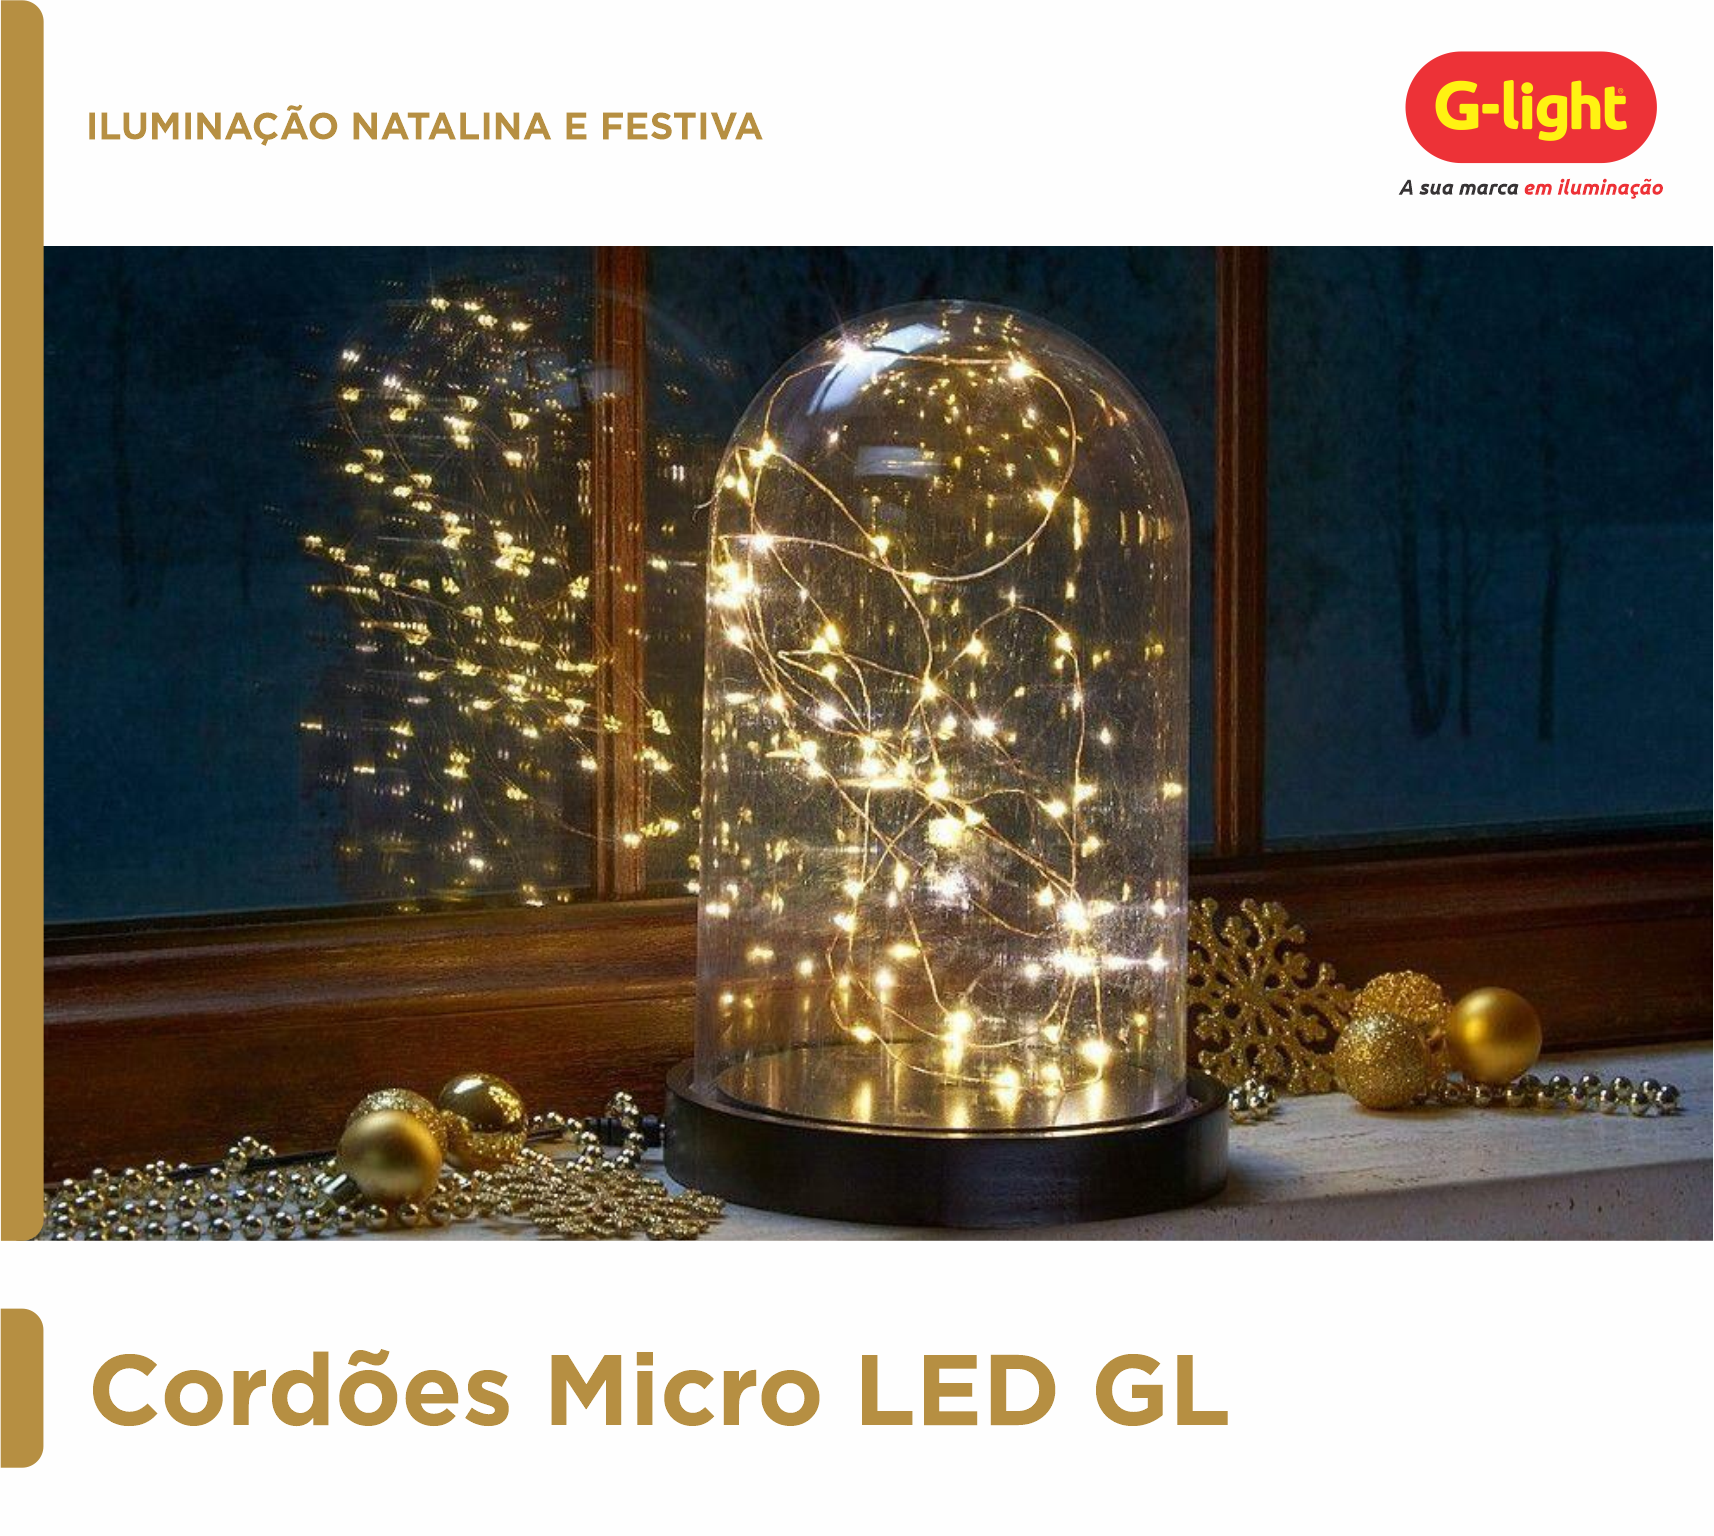 Cordões Micro LED GL